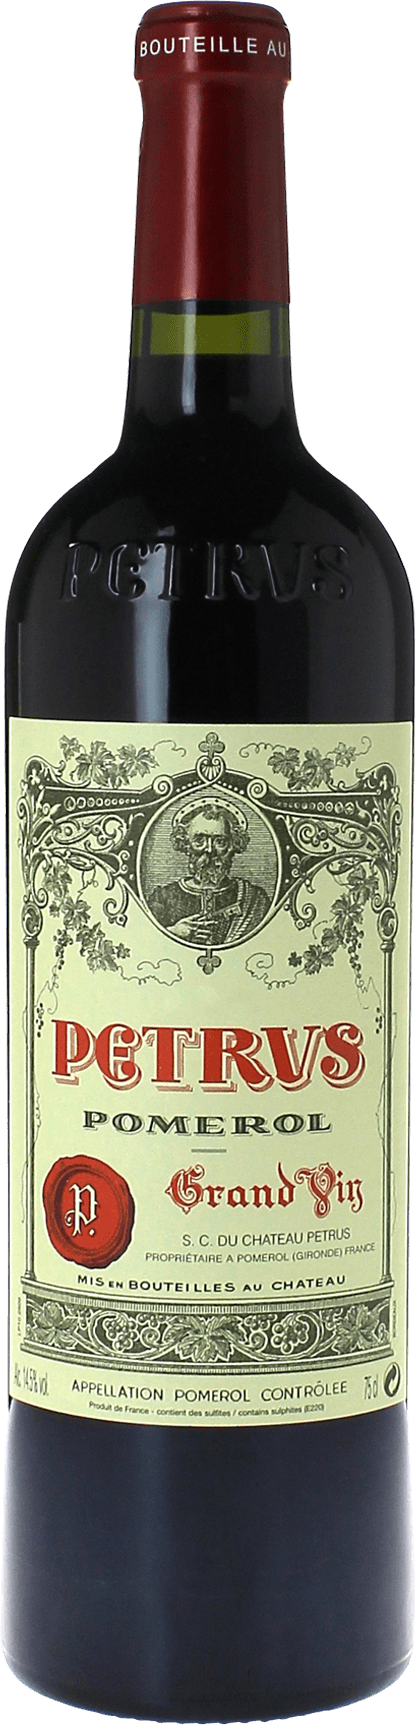 Petrus 1990  Pomerol, Bordeaux rouge